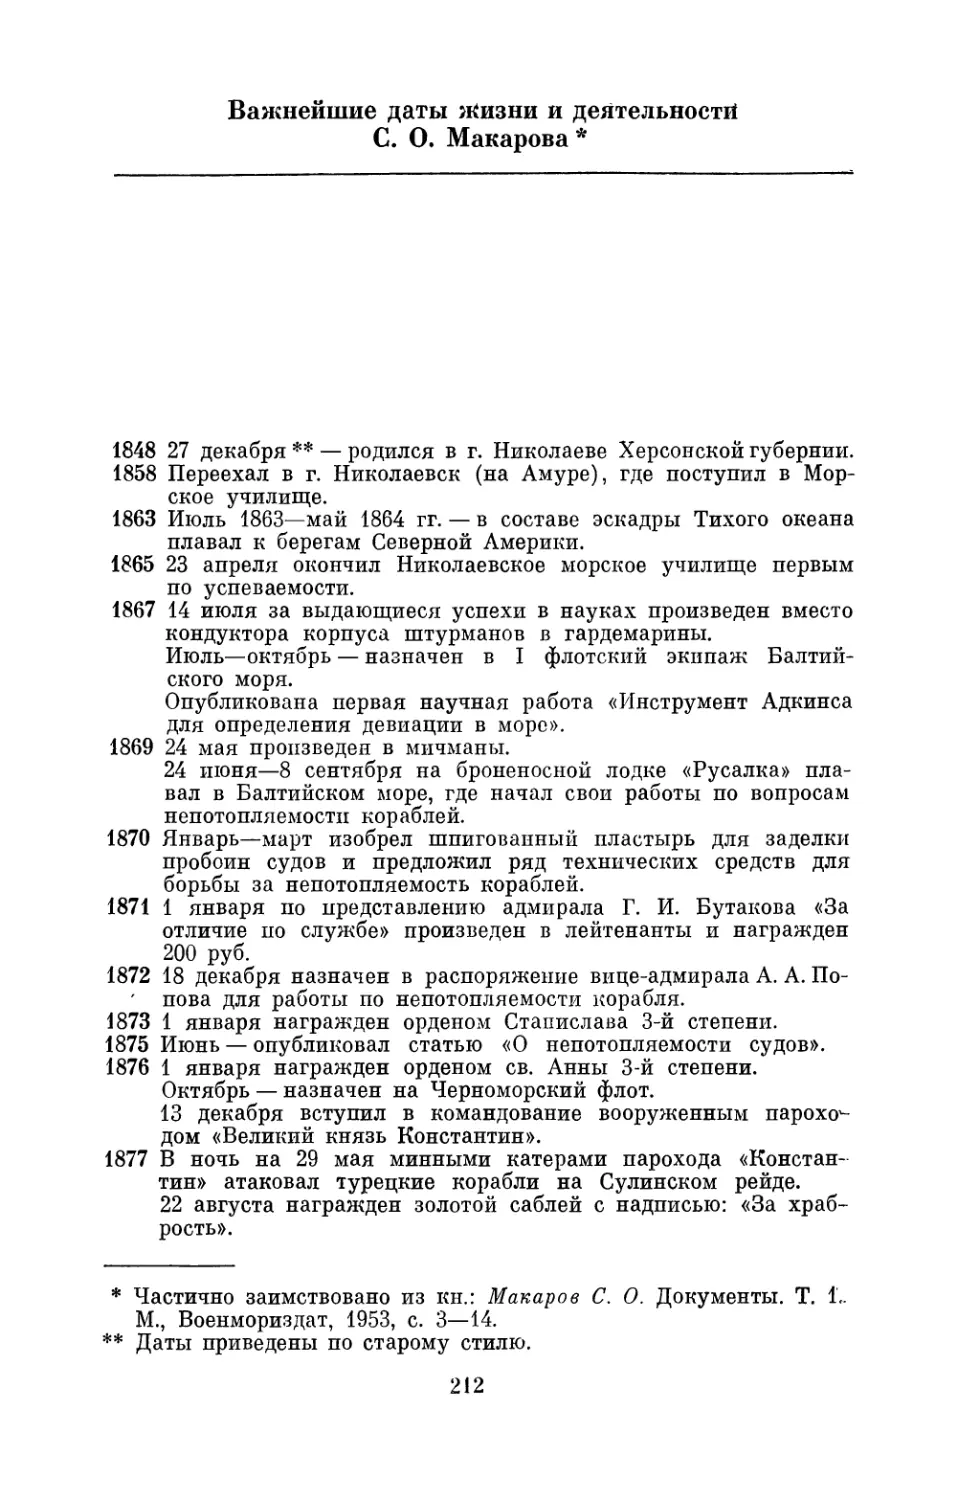 Важнейшие даты жизни и деятельности С. О. Макарова